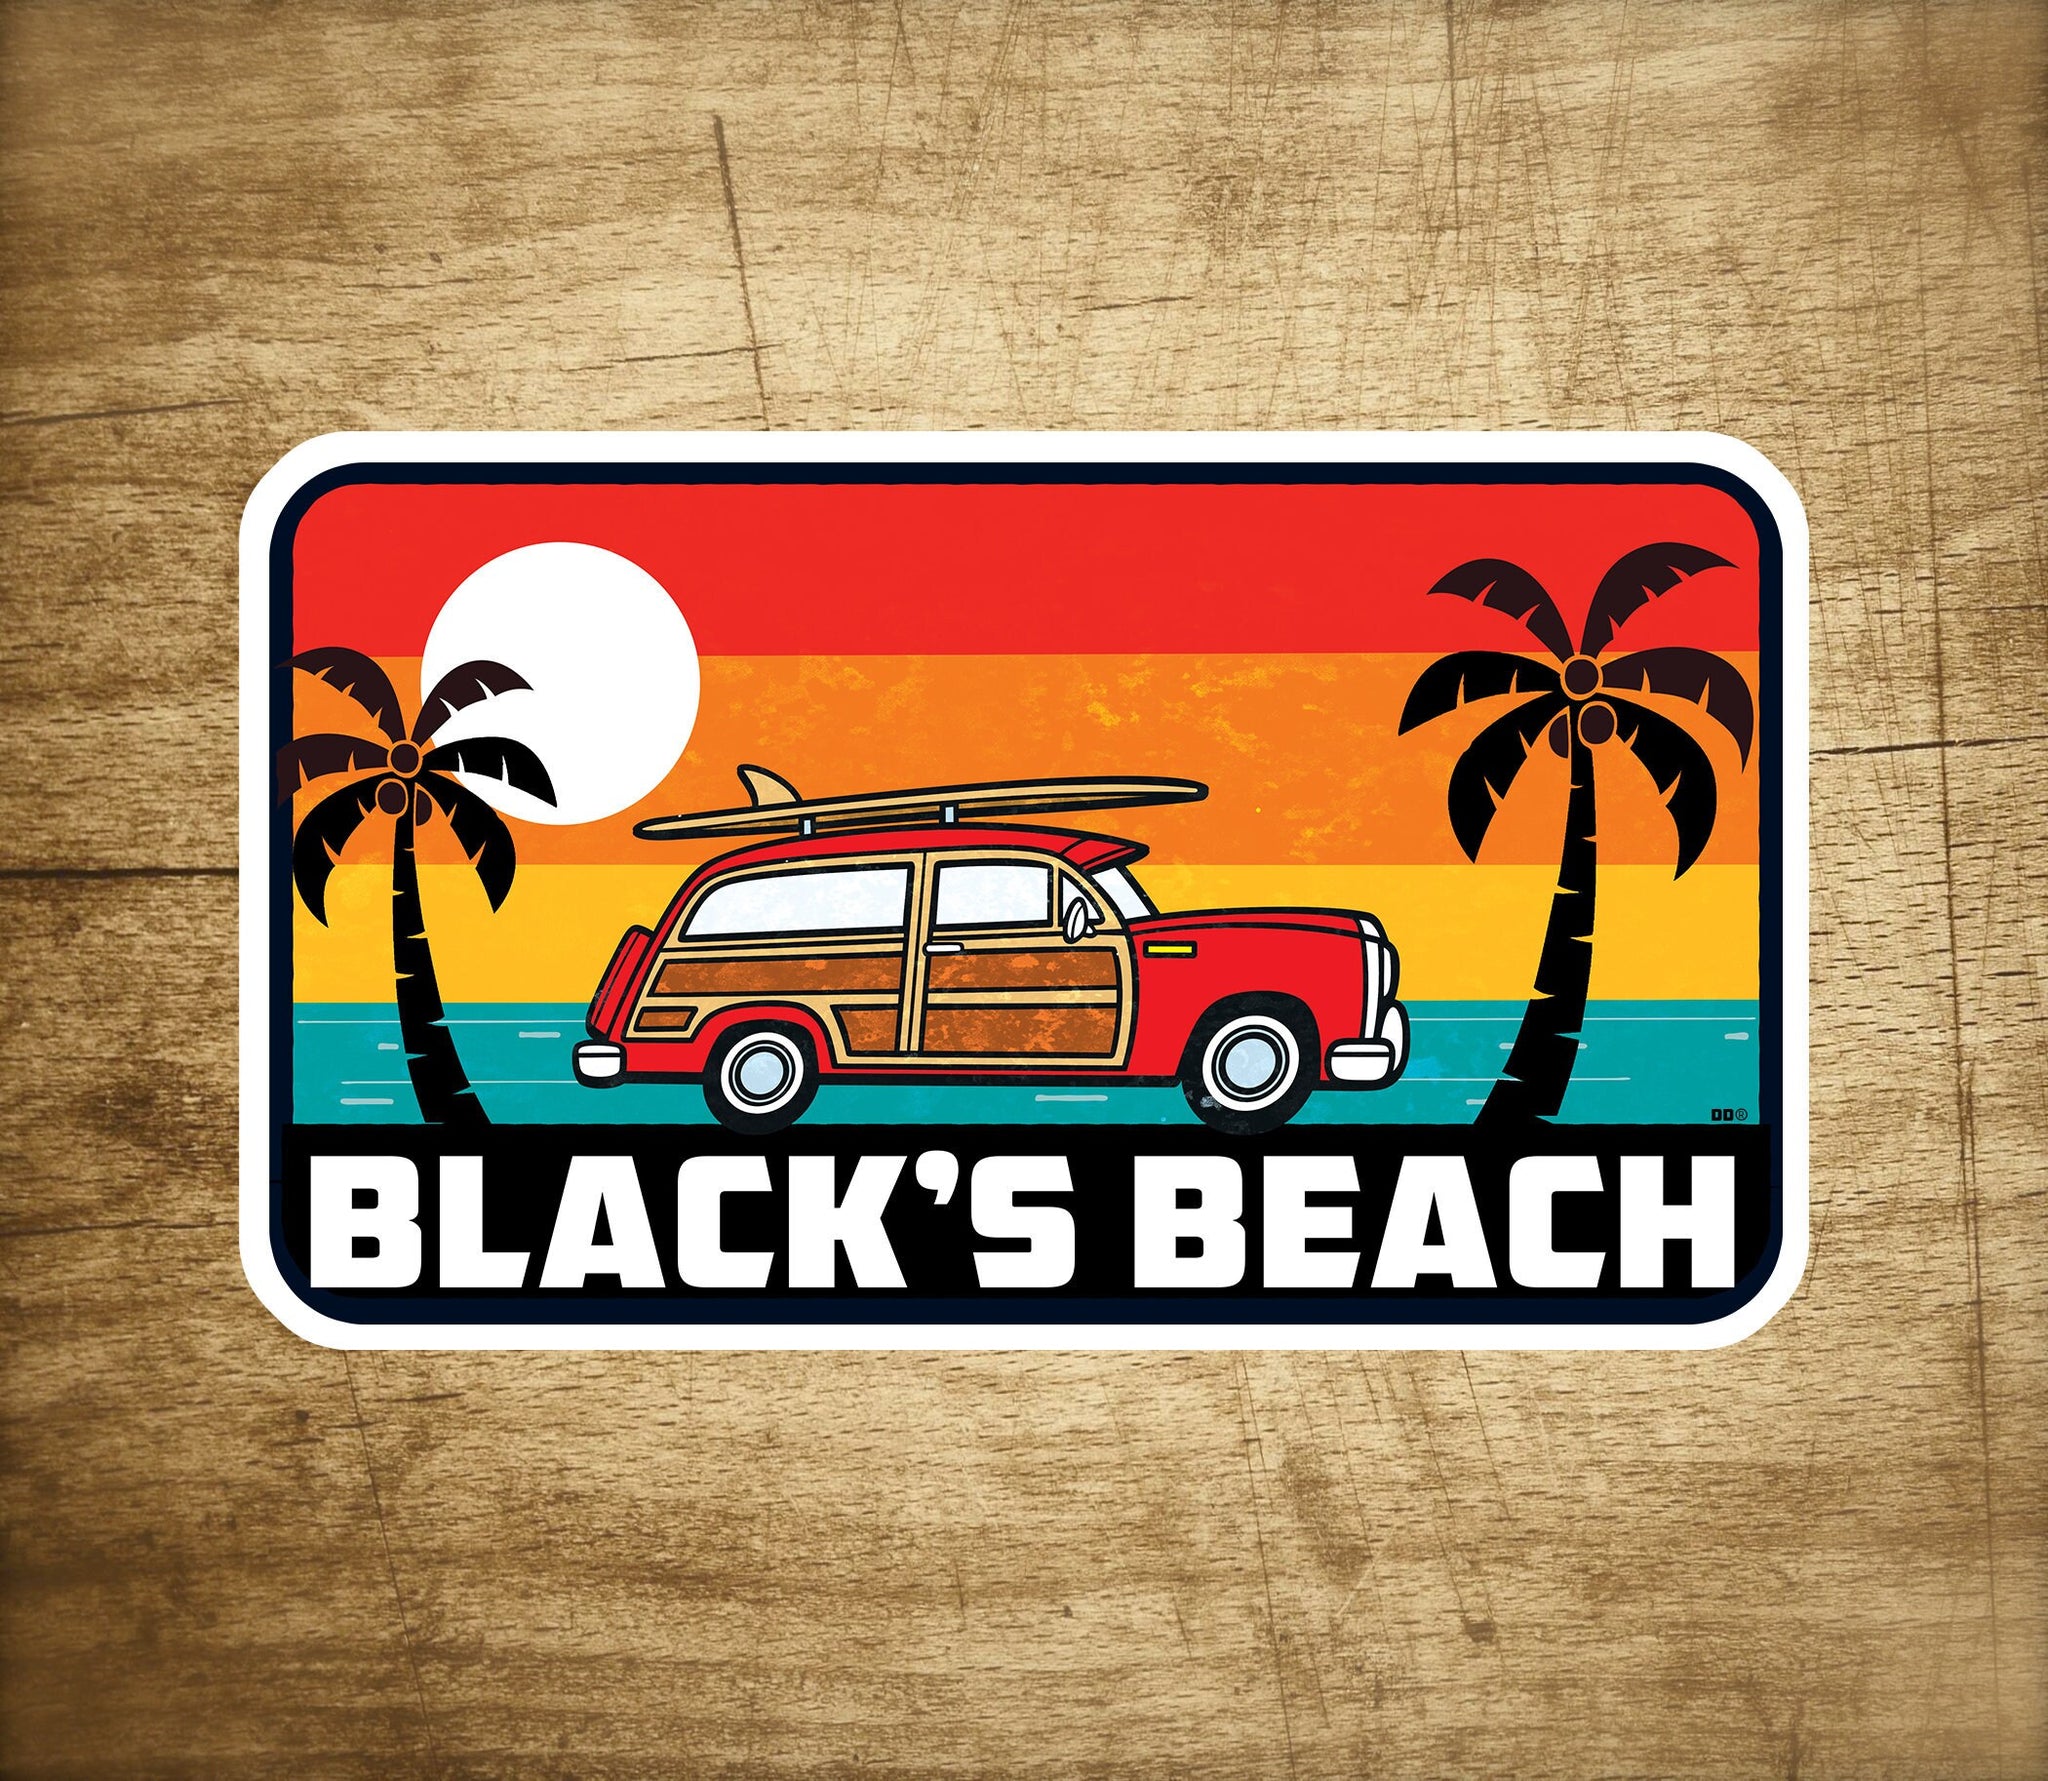 Black's Beach California Decal Sticker 3.75" X 2.25" Surf San Diego Surfing